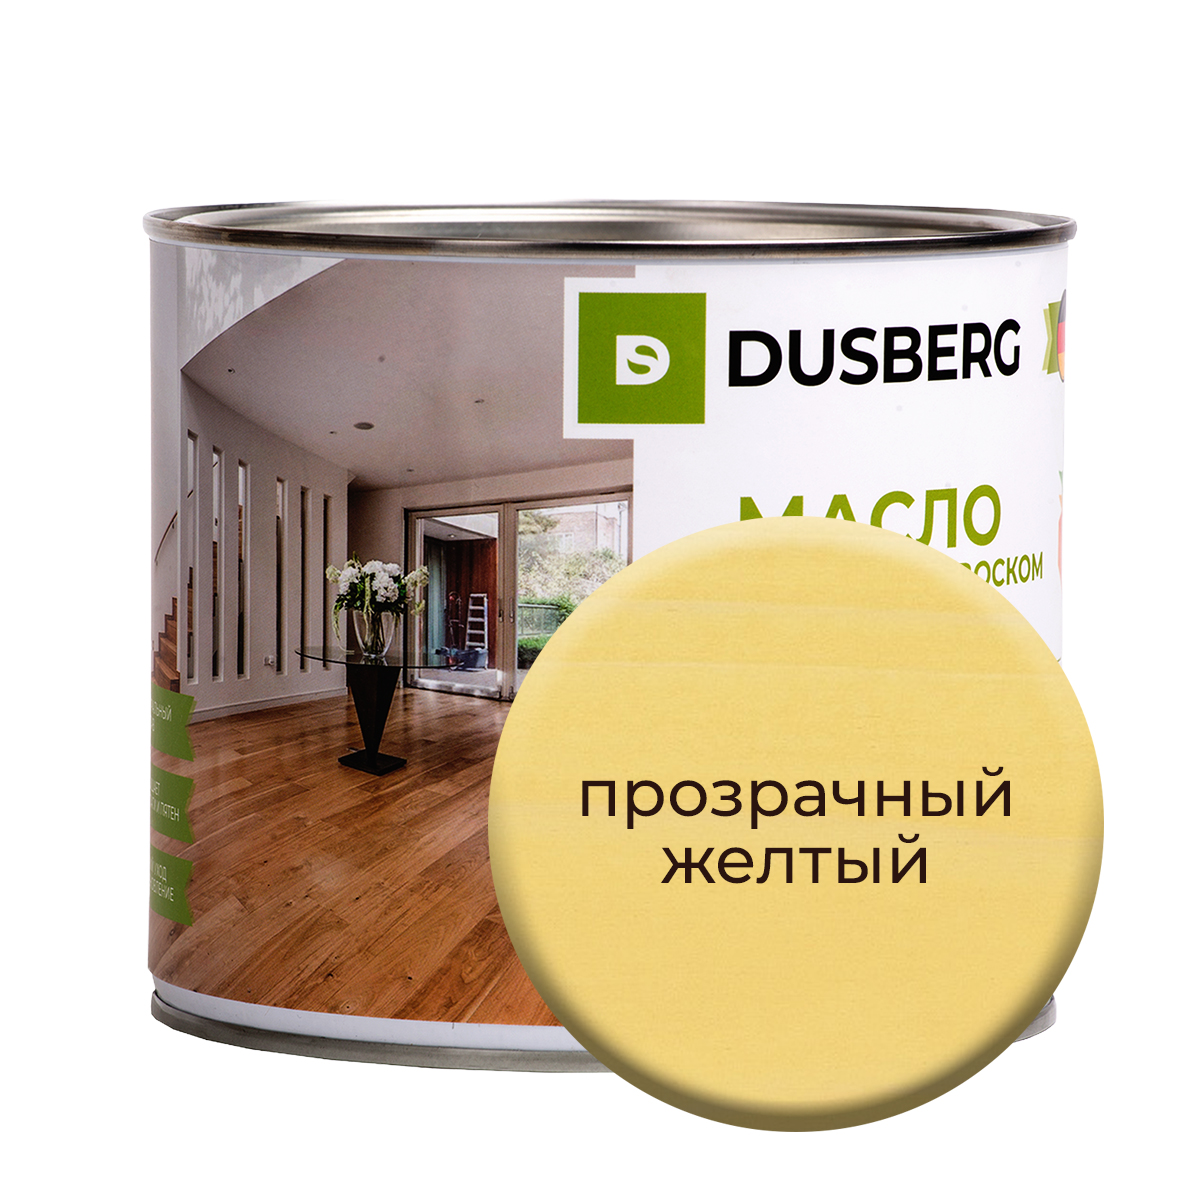 Масло Dusberg с твердым воском на бесцветной основе, 750 мл Прозрачный желтый масло воск для террасной доски brite flexx бес ное банка 2 5 л 212476